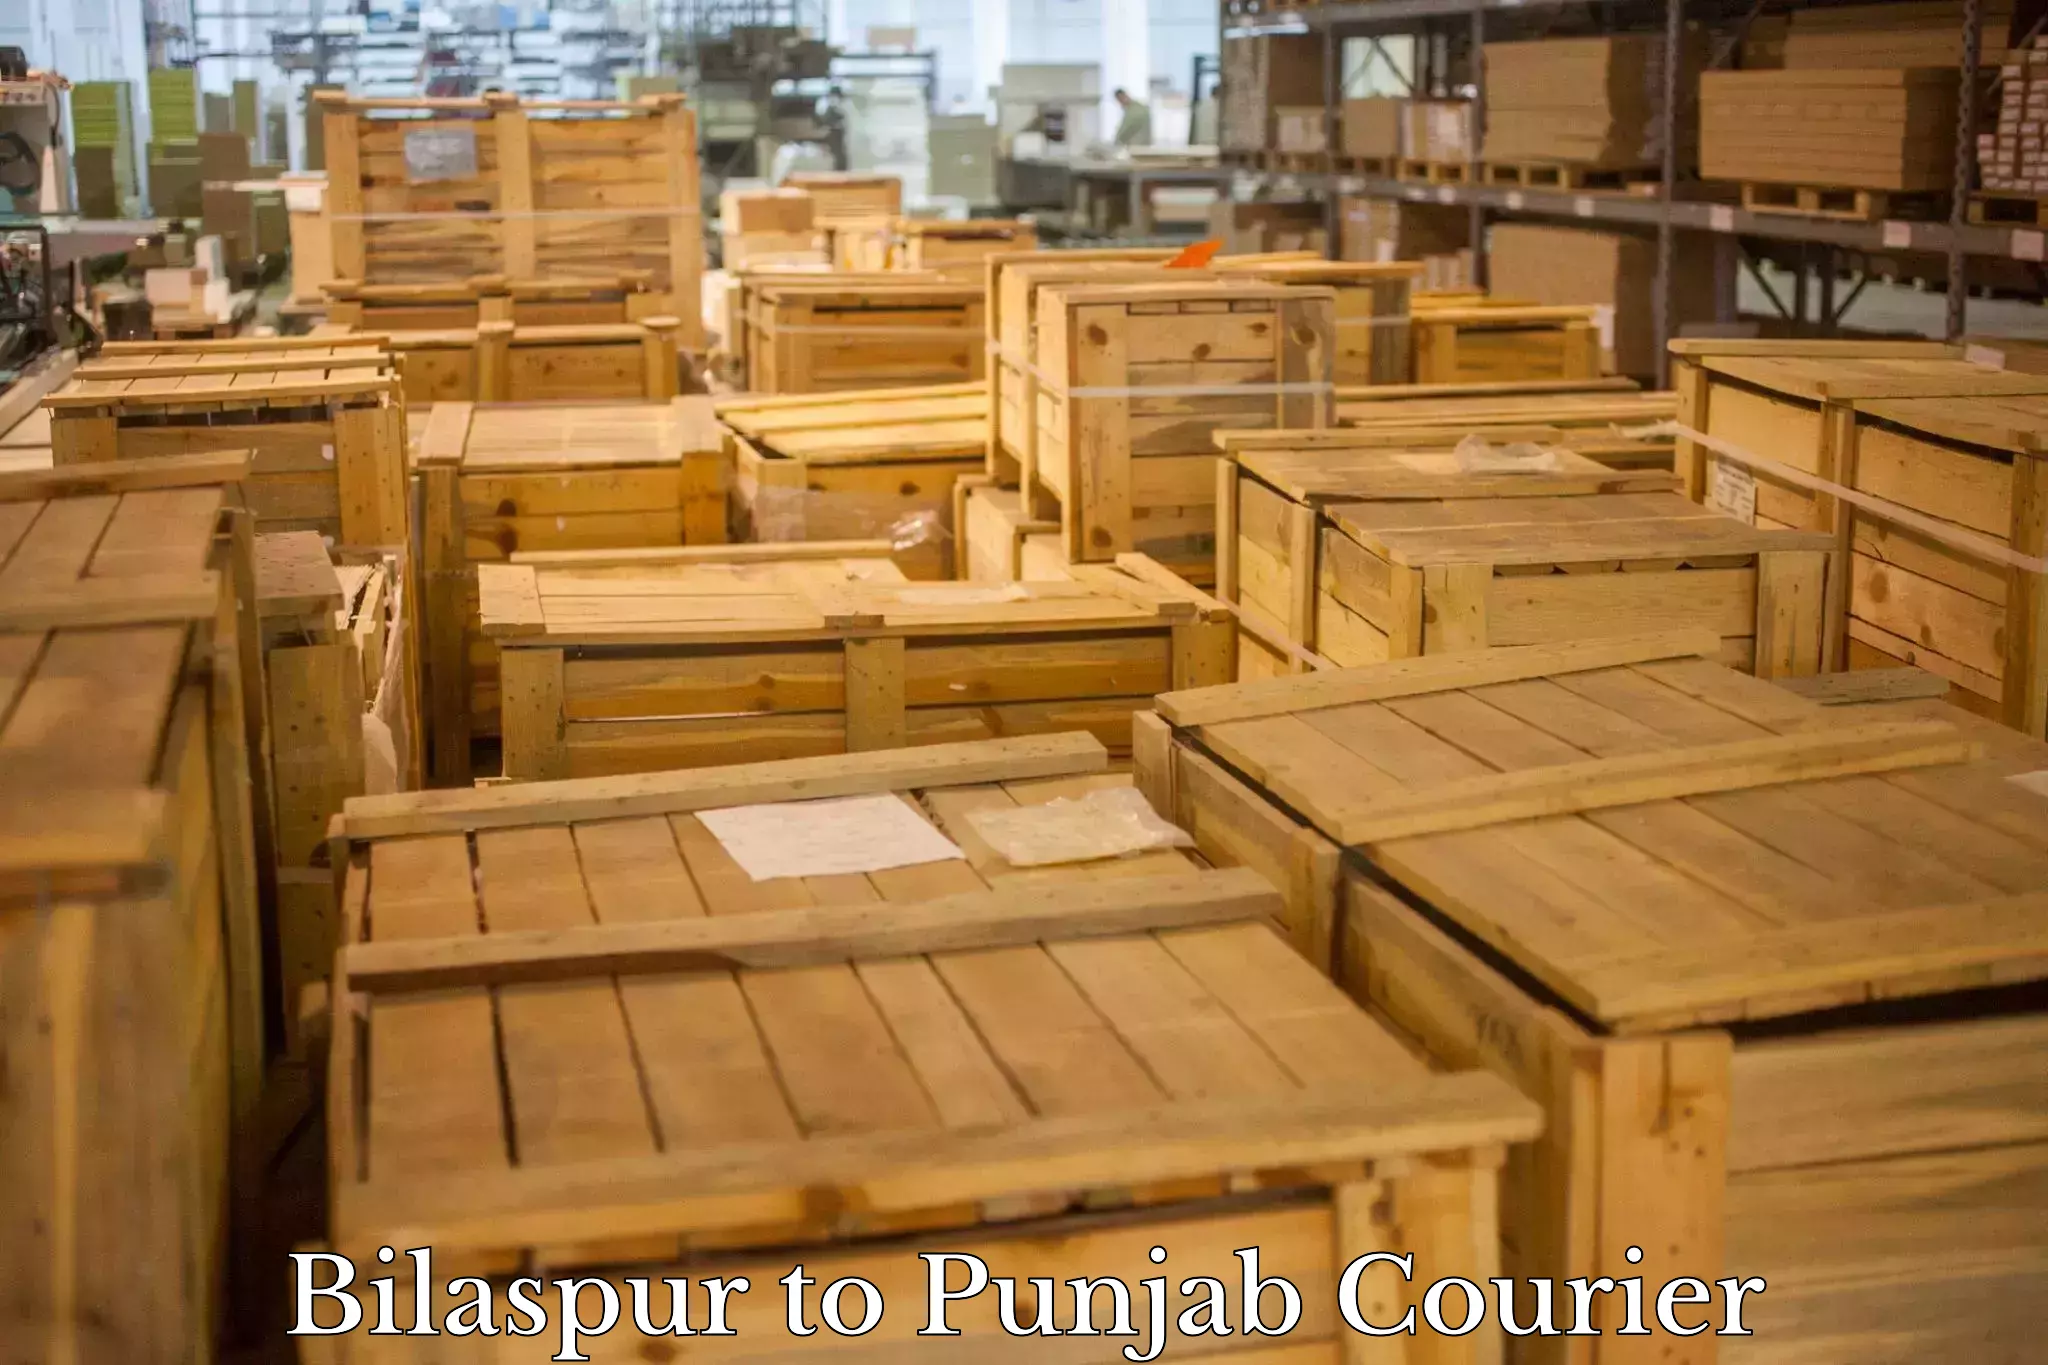 Premium courier solutions Bilaspur to Ludhiana